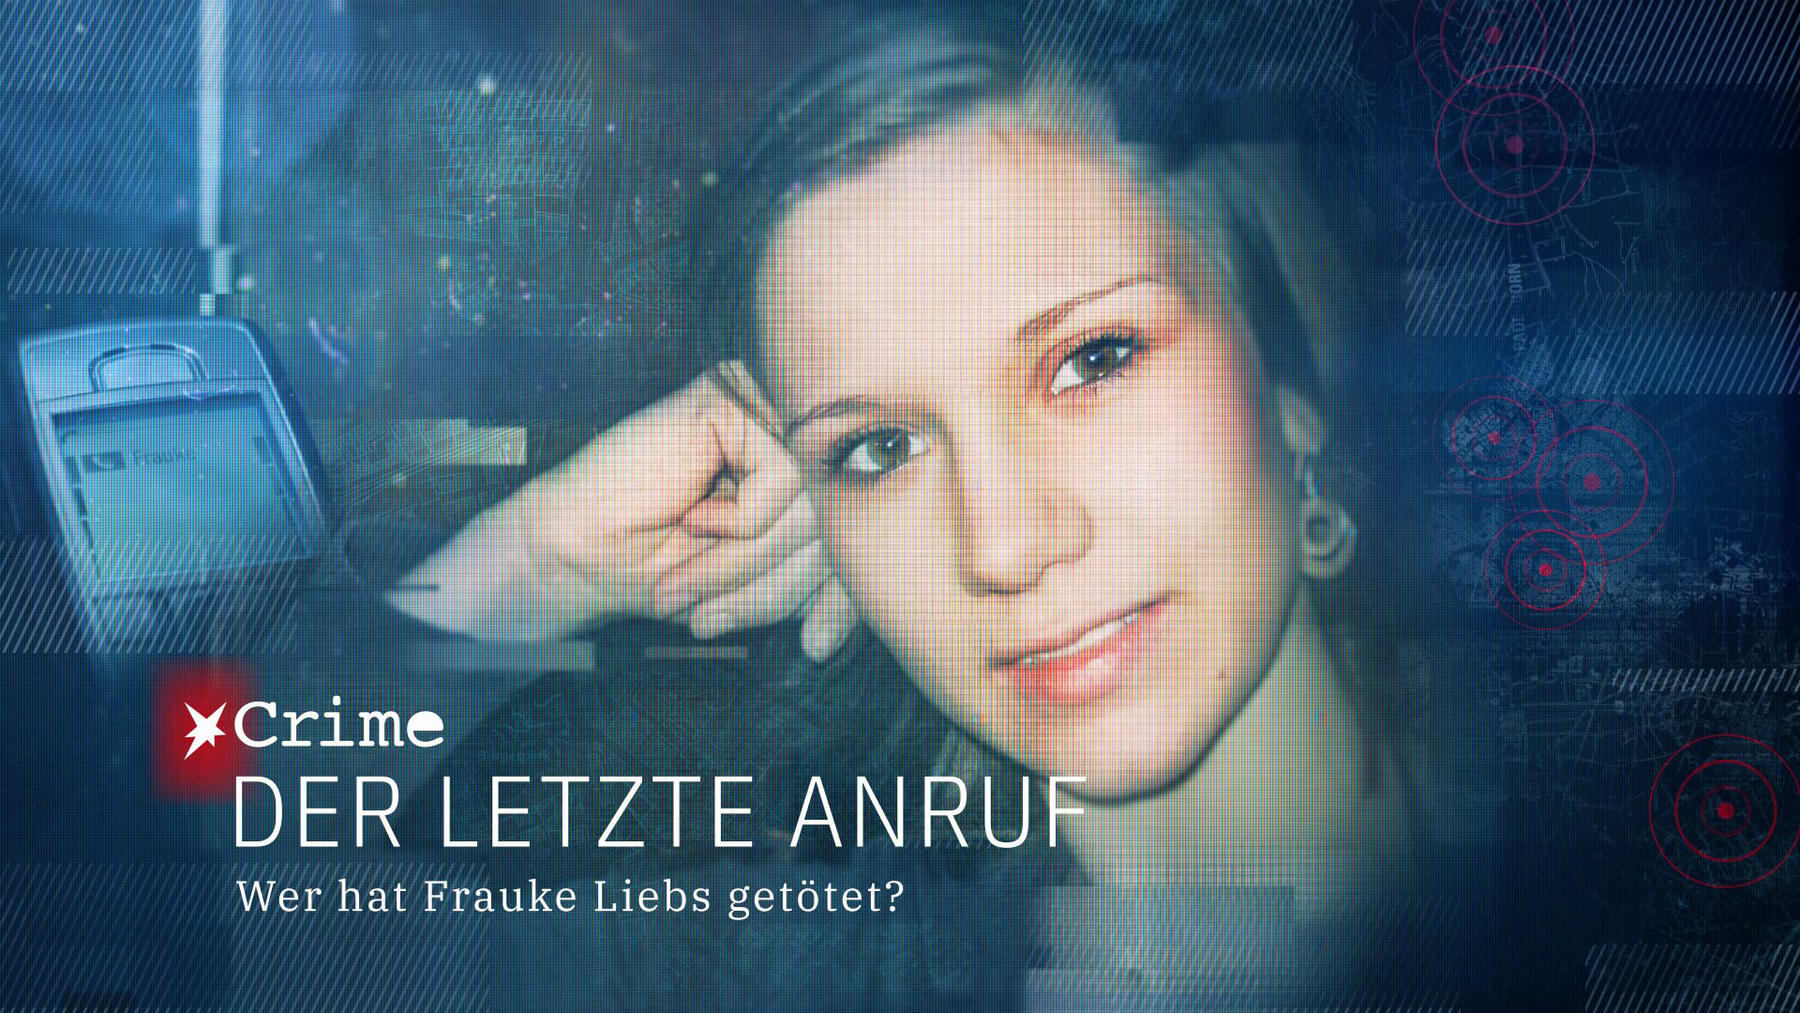 Folge 1 vom 24.11.2021 | STERN CRIME: Der letzte Anruf – Wer hat Frauke Liebs getötet? | Staffel 1 | RTL+